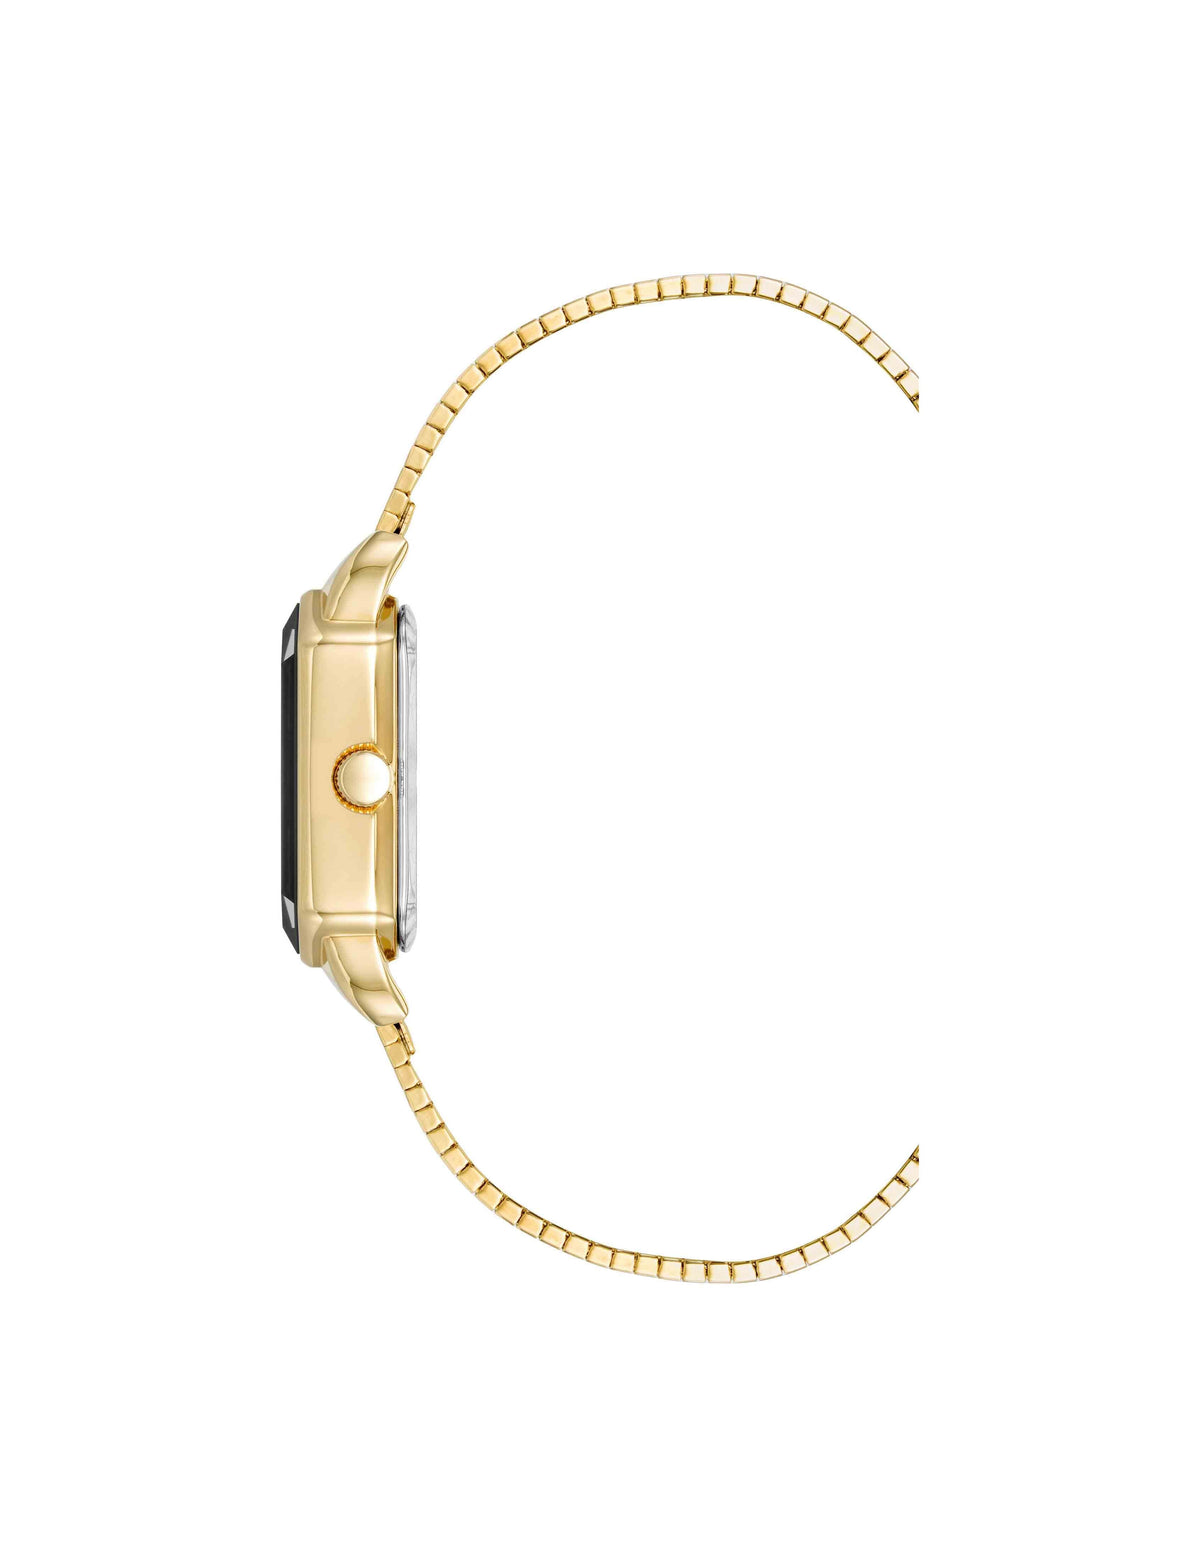 Anne Klein  Retro Link Bracelet Watch